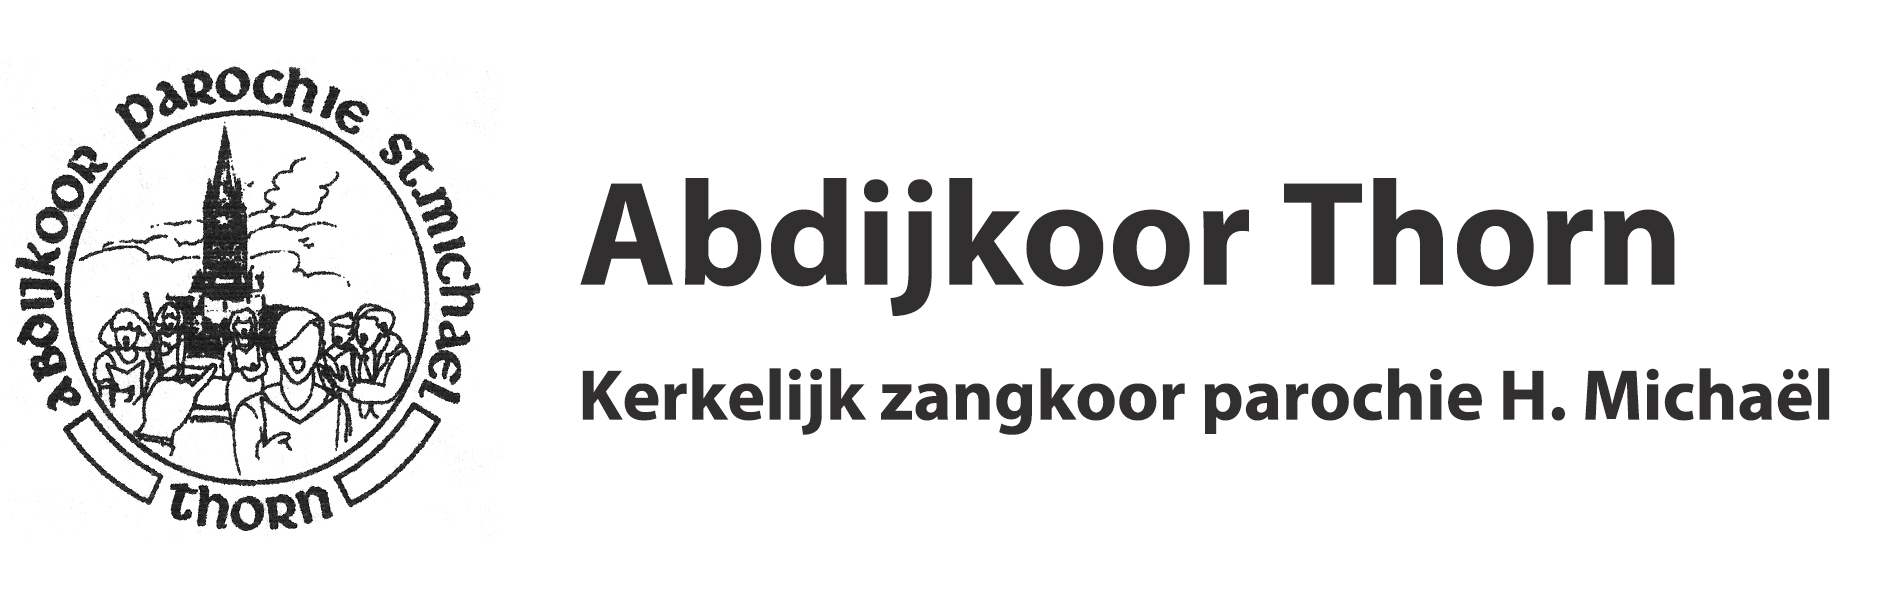 Abdijkoor_Logo_Tekst_600